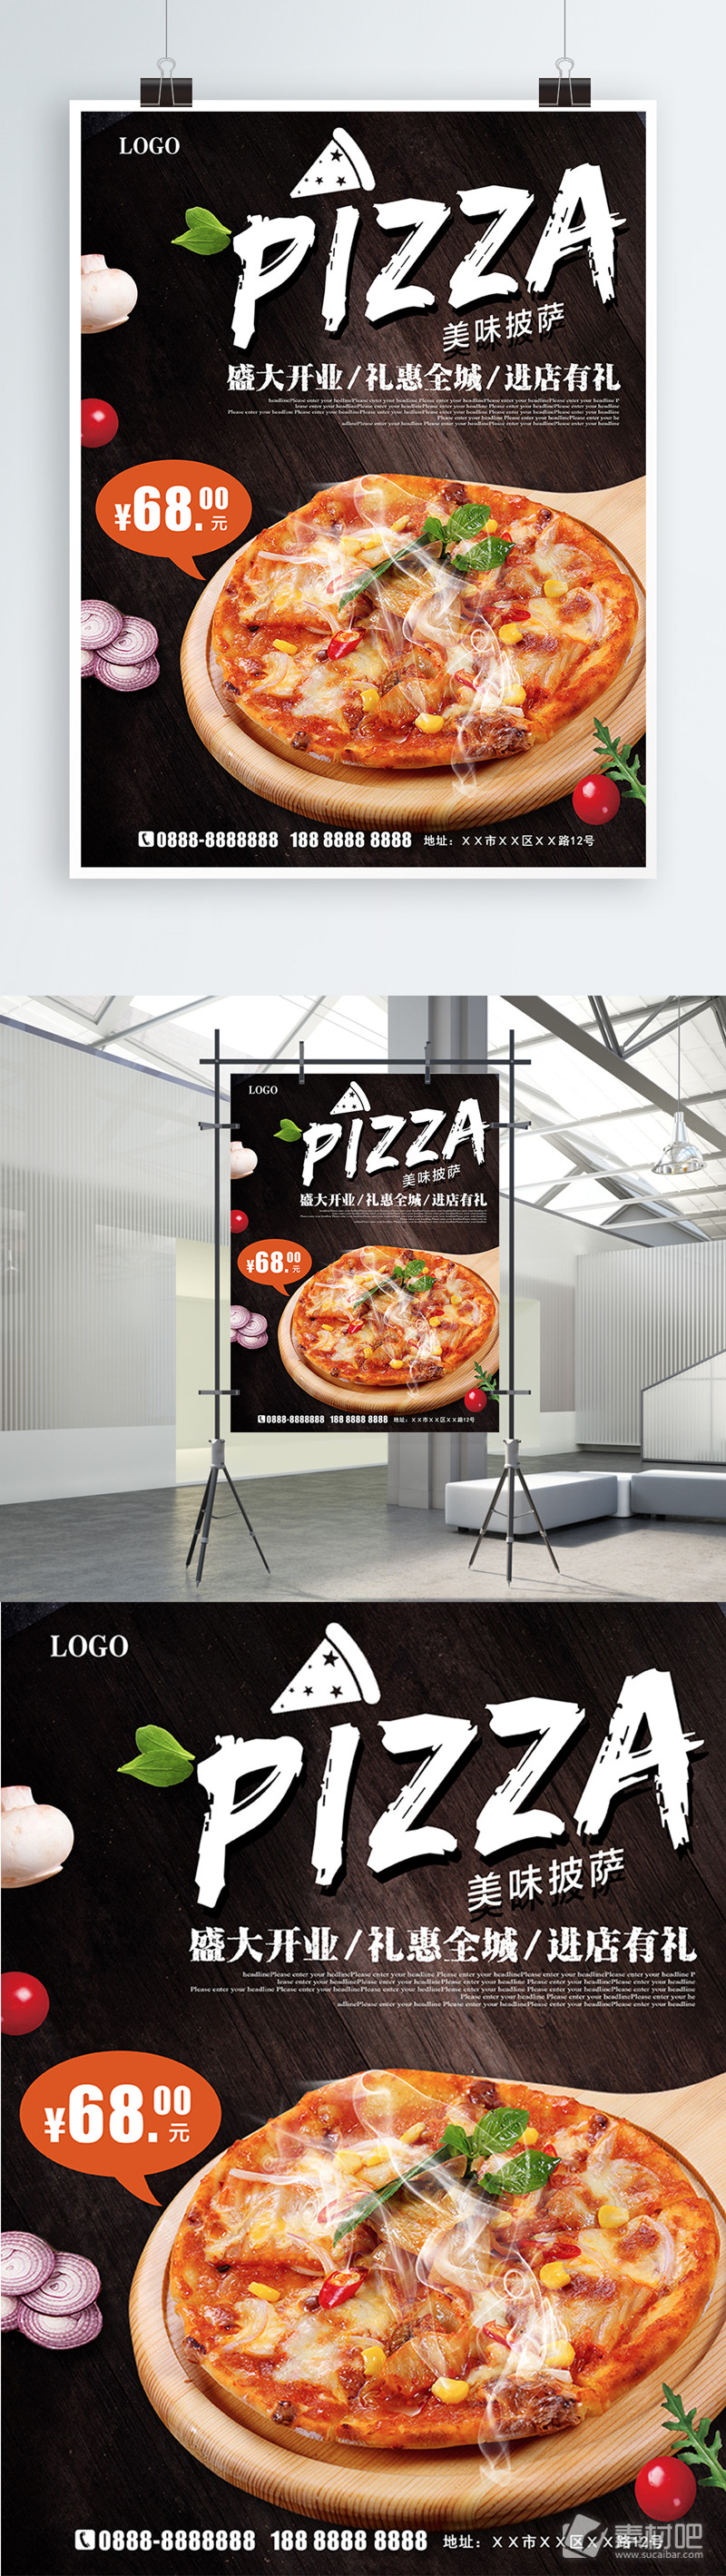 高档大气西餐美味披萨促销海报